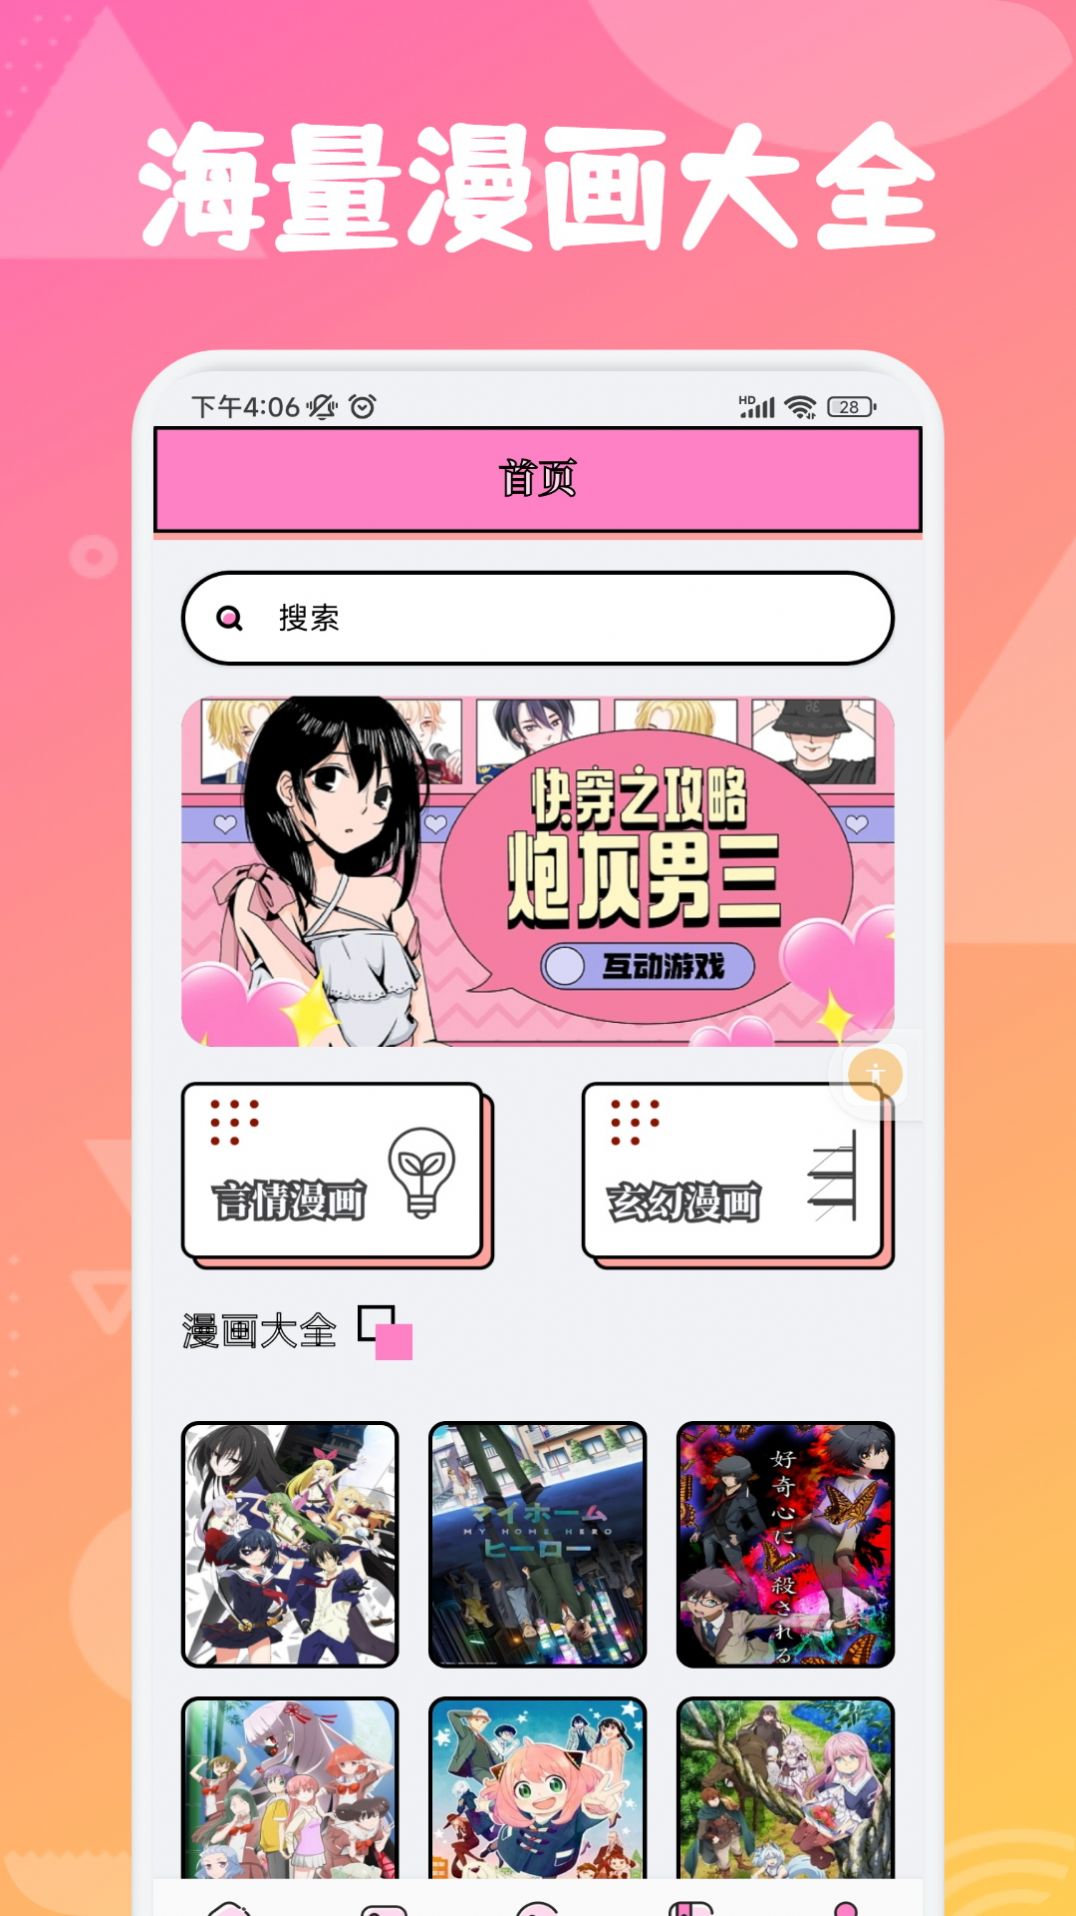 追漫大师兄app下载官方版[图1]